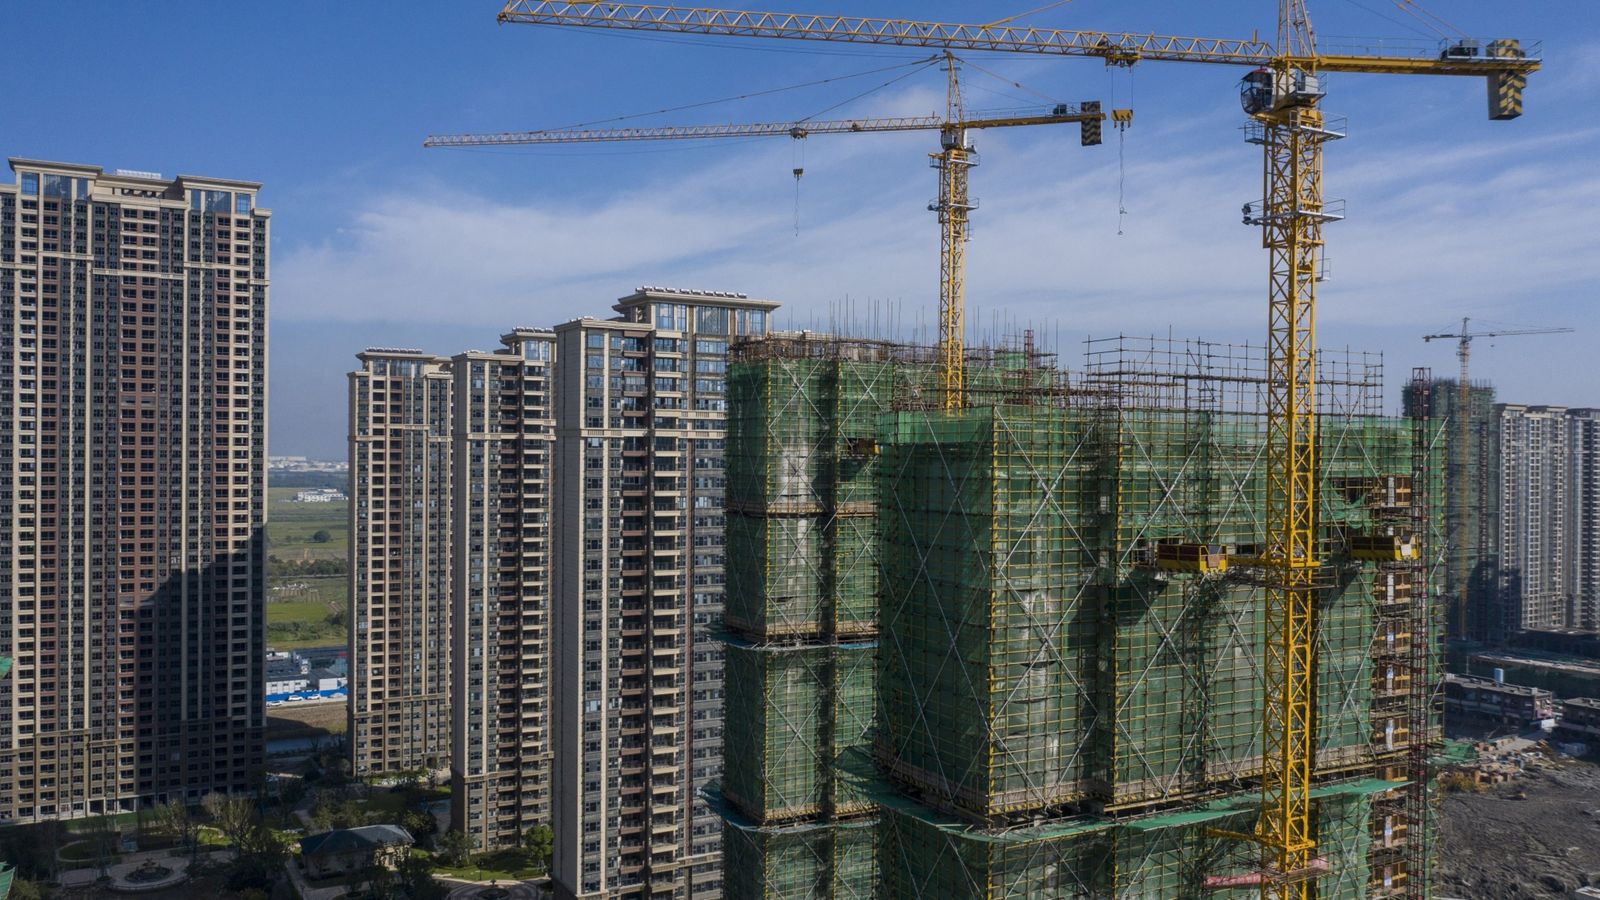 مبان سكنية قيد الإنشاء في مقاطعة جيانغسو الصينية - 24 سبتمبر 2021 - Bloomberg